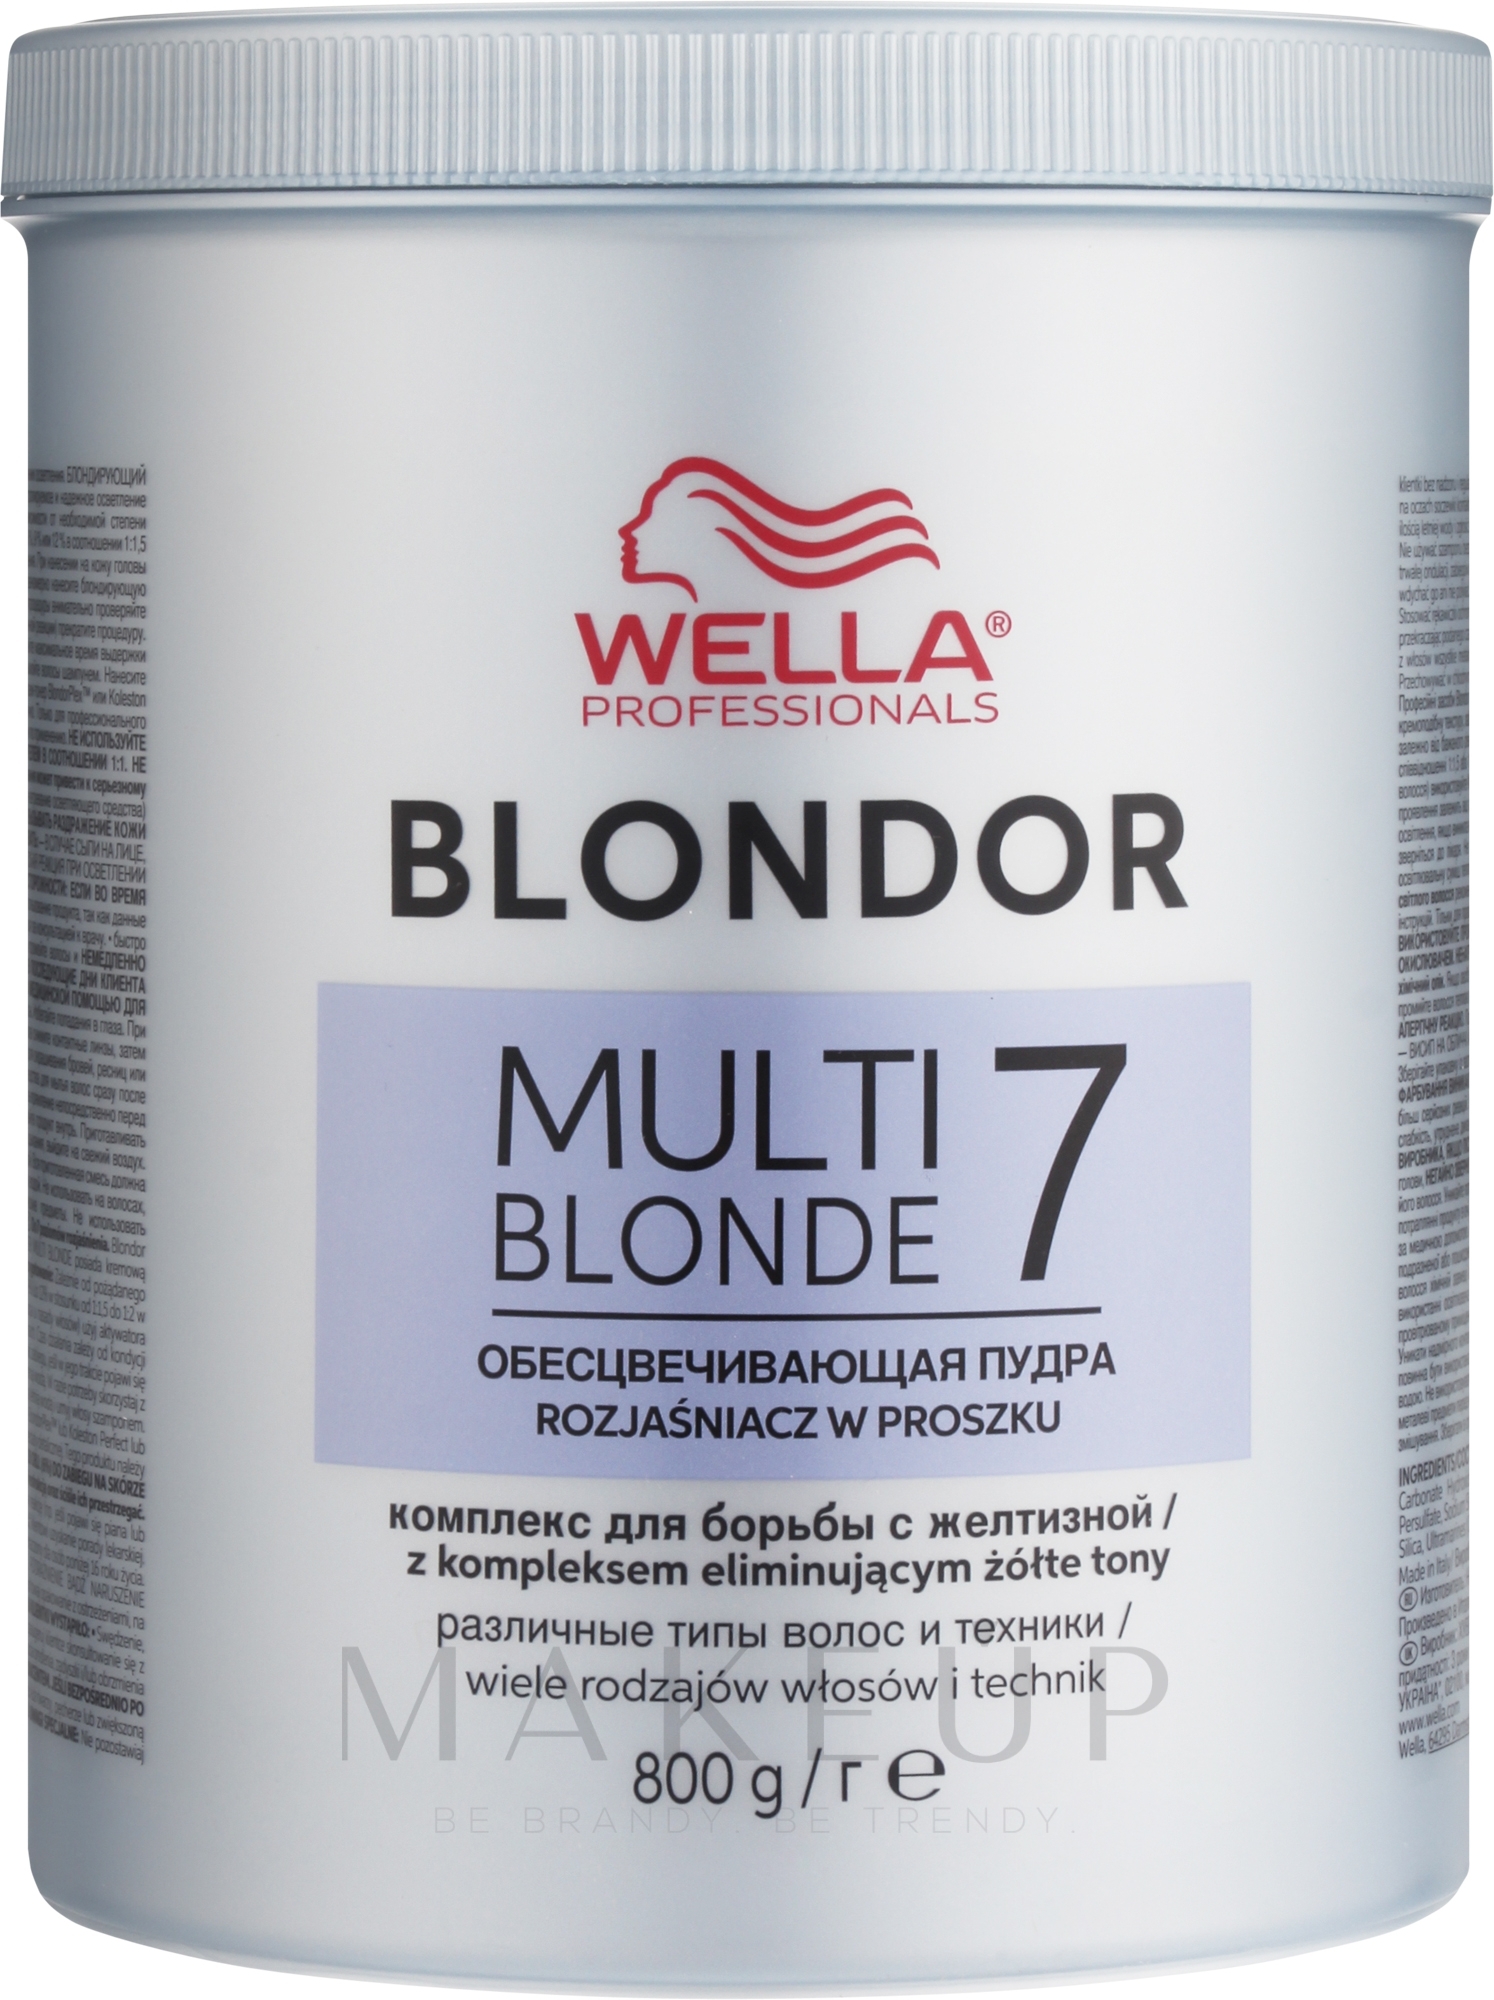 Blondierpulver - Wella Professionals Blondor Multi Blonde 7 Powder Lightener — Bild 800 g